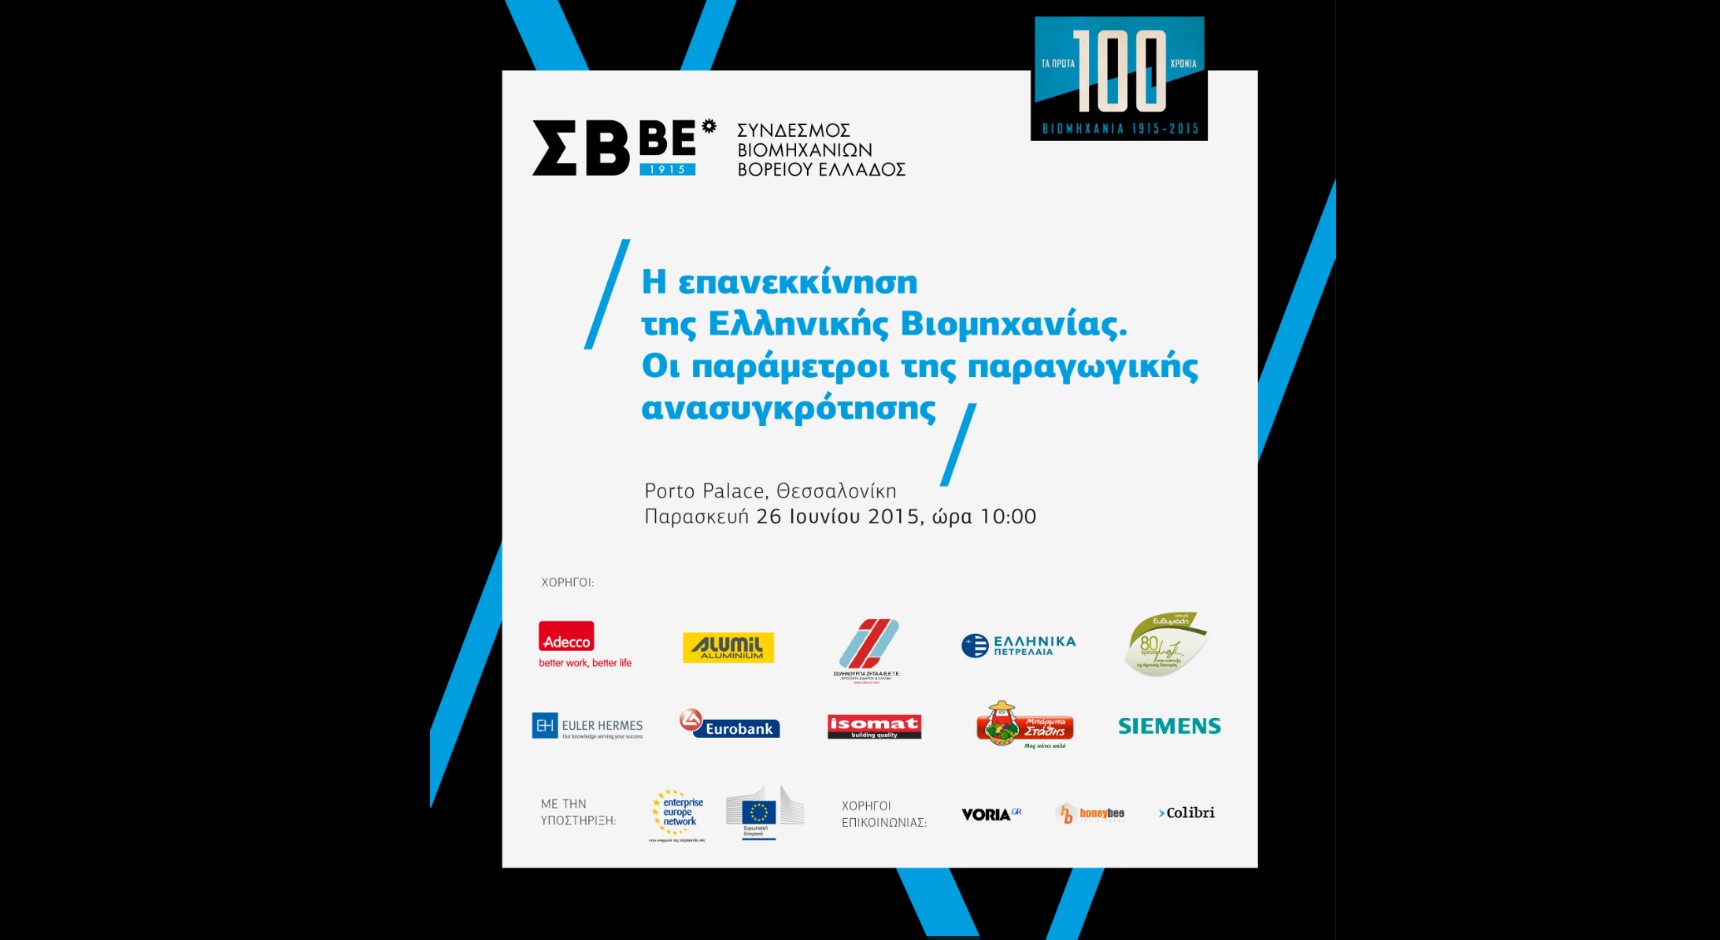 Συνέδριο του ΣΒΒΕ με θέμα: «Επανεκκίνηση της Ελληνικής Βιομηχανίας. Οι παράμετροι της παραγωγικής ανασυγκρότησης»